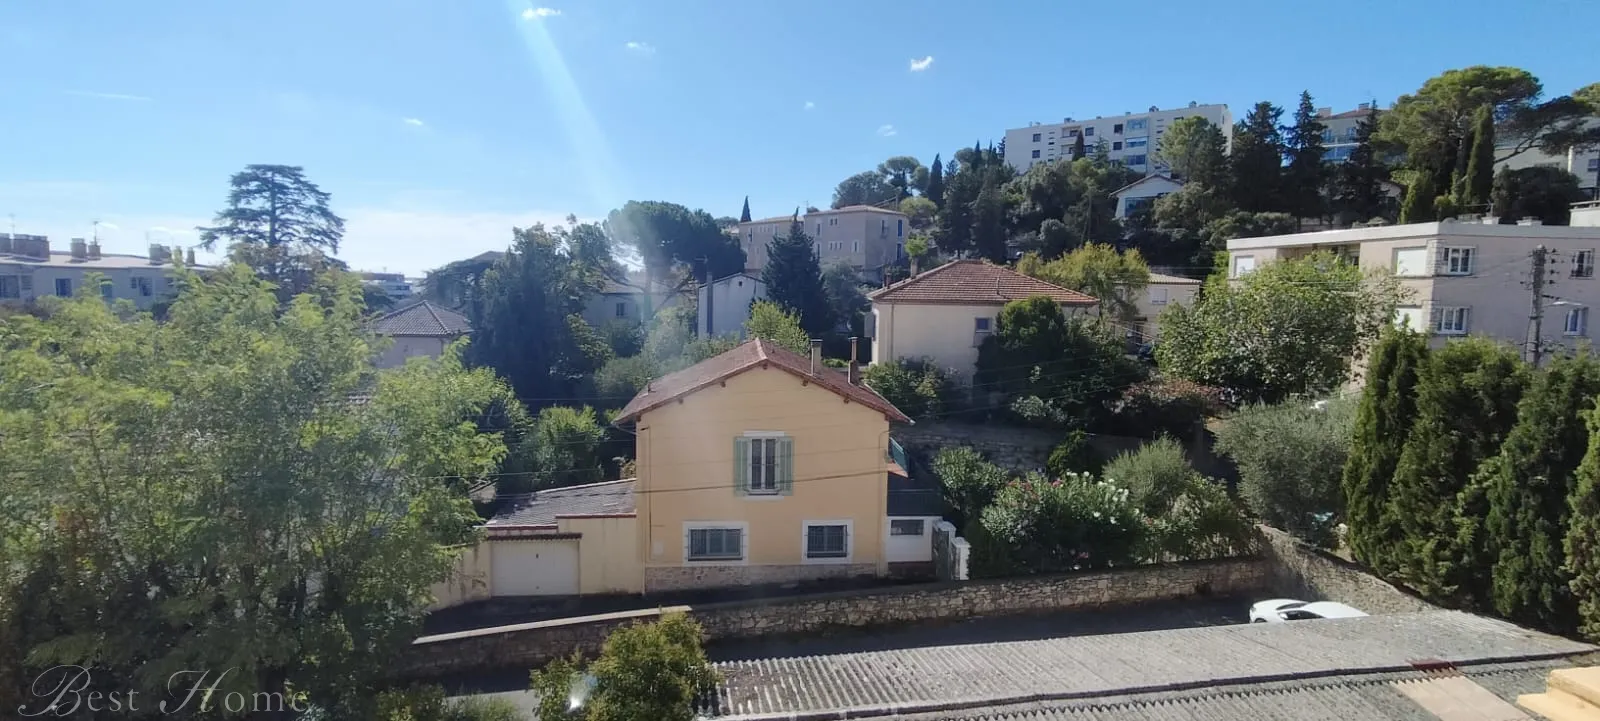 Vente EXCLUSIVITE appartement Quartier Croix de fer à Nîmes de type 3 avec terrasse, loggia et Cave 